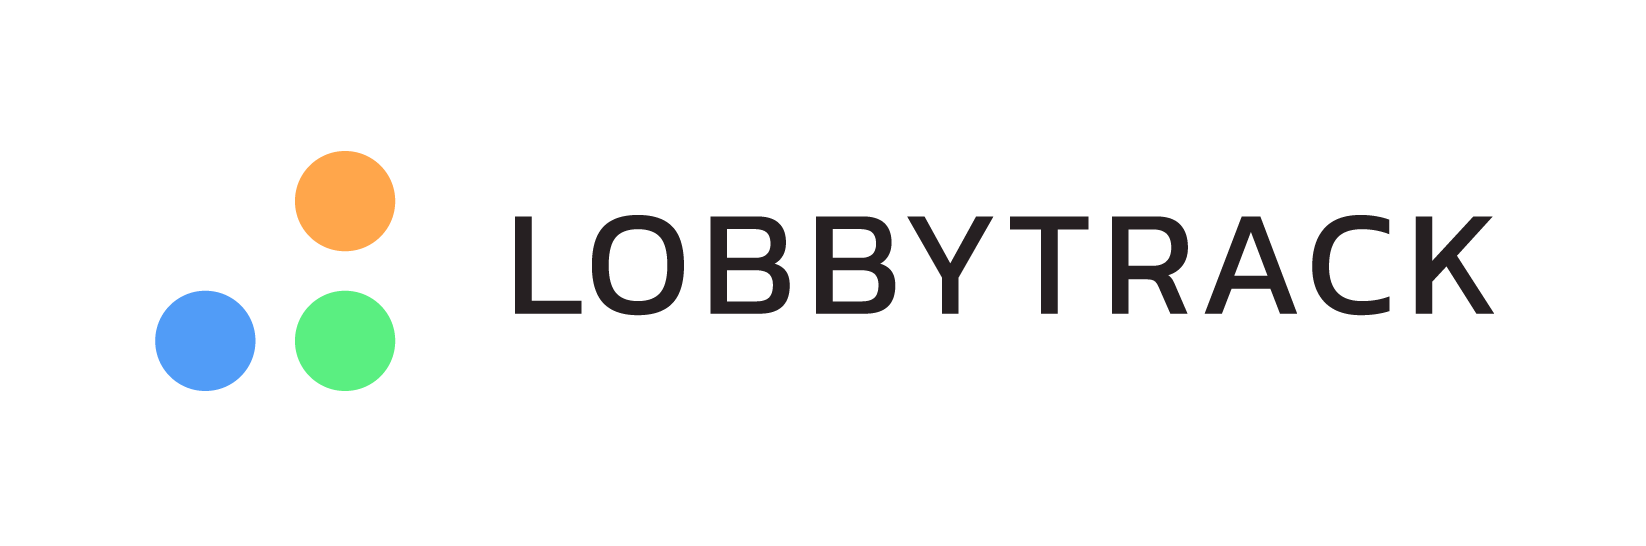 Lobbytrack Eventleaf Integration